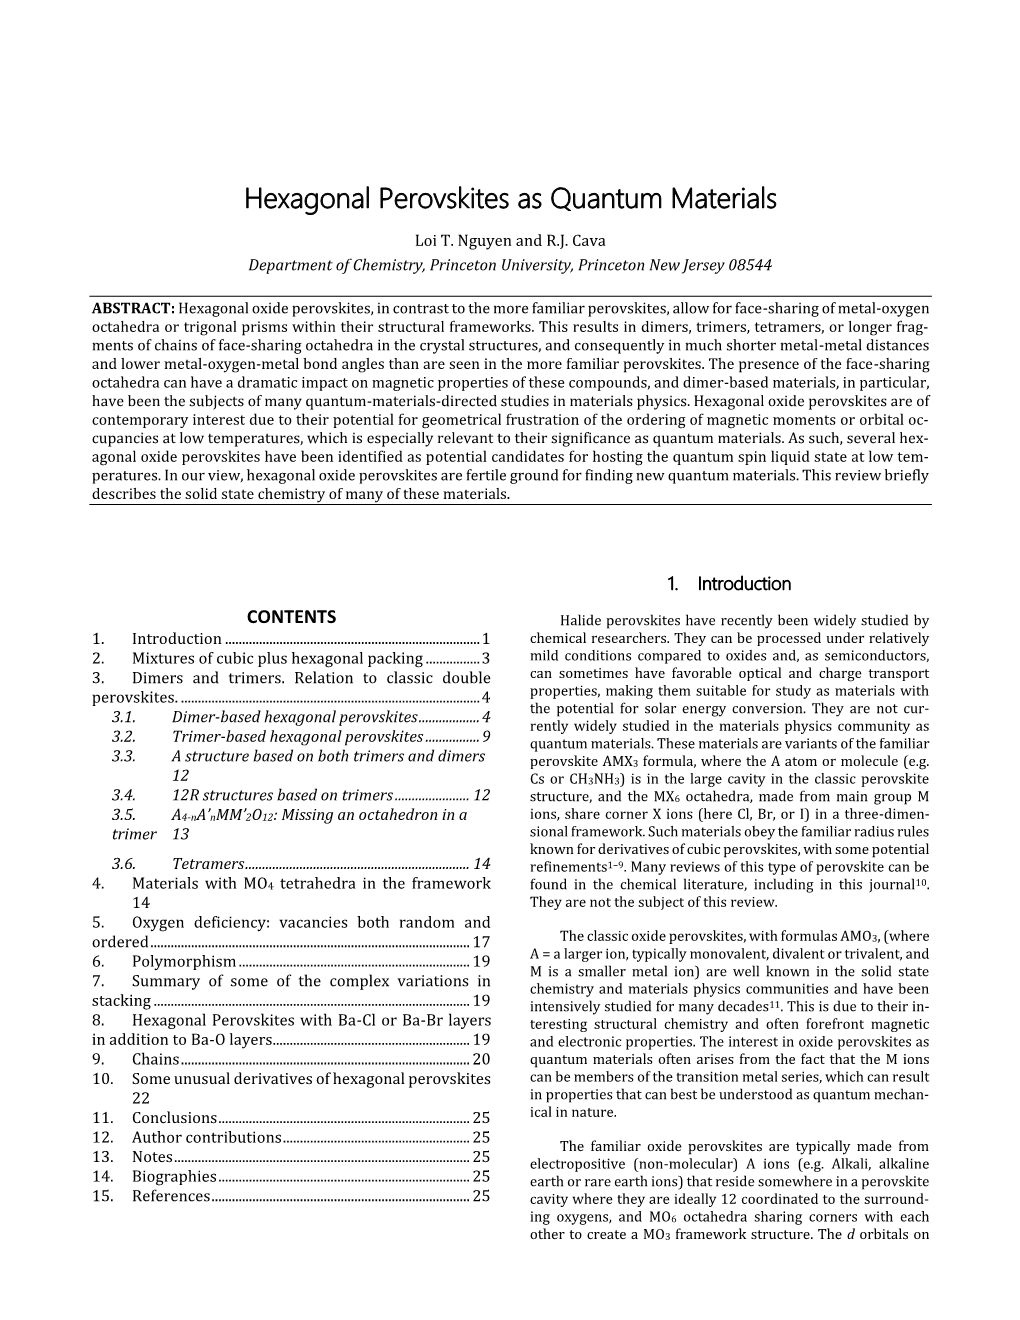 Hexagonal Perovskites As Quantum Materials